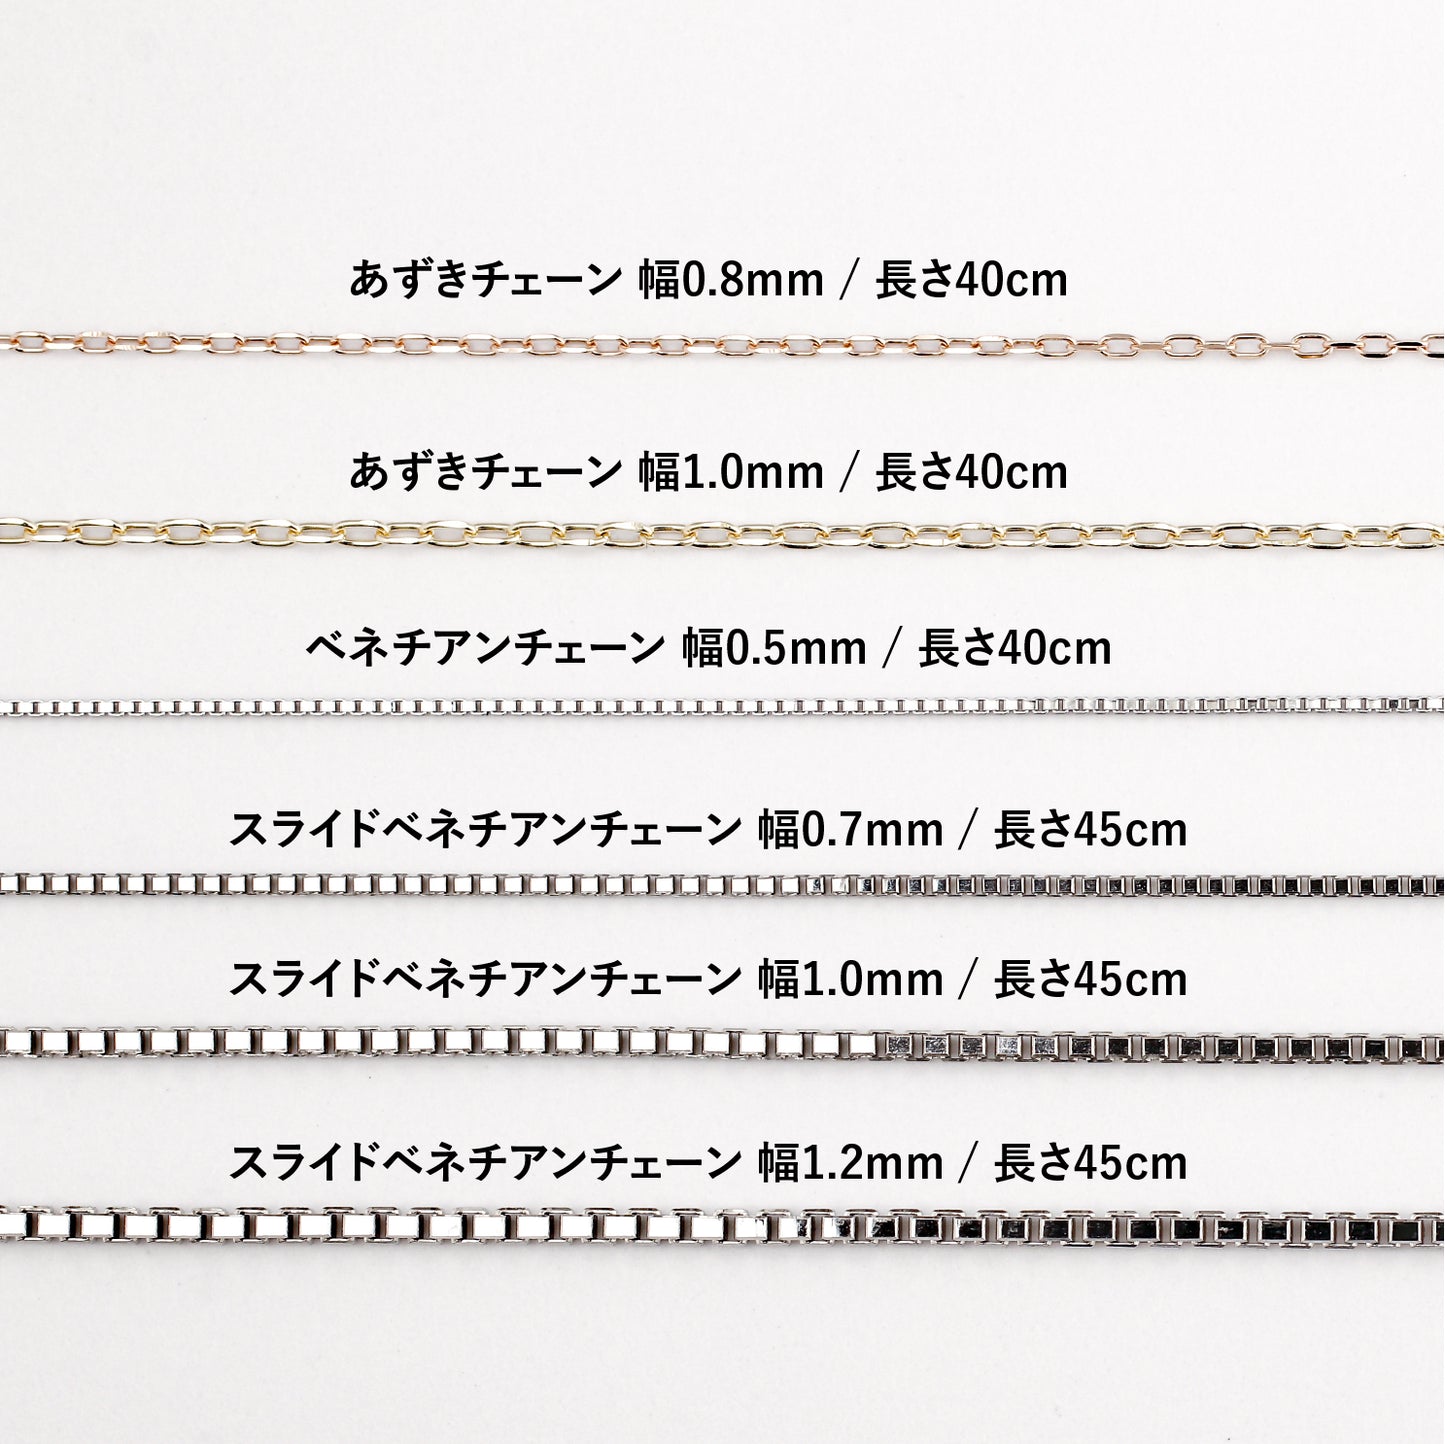 【空枠】3.5mm丸 覆輪 ネックレス | wkae177